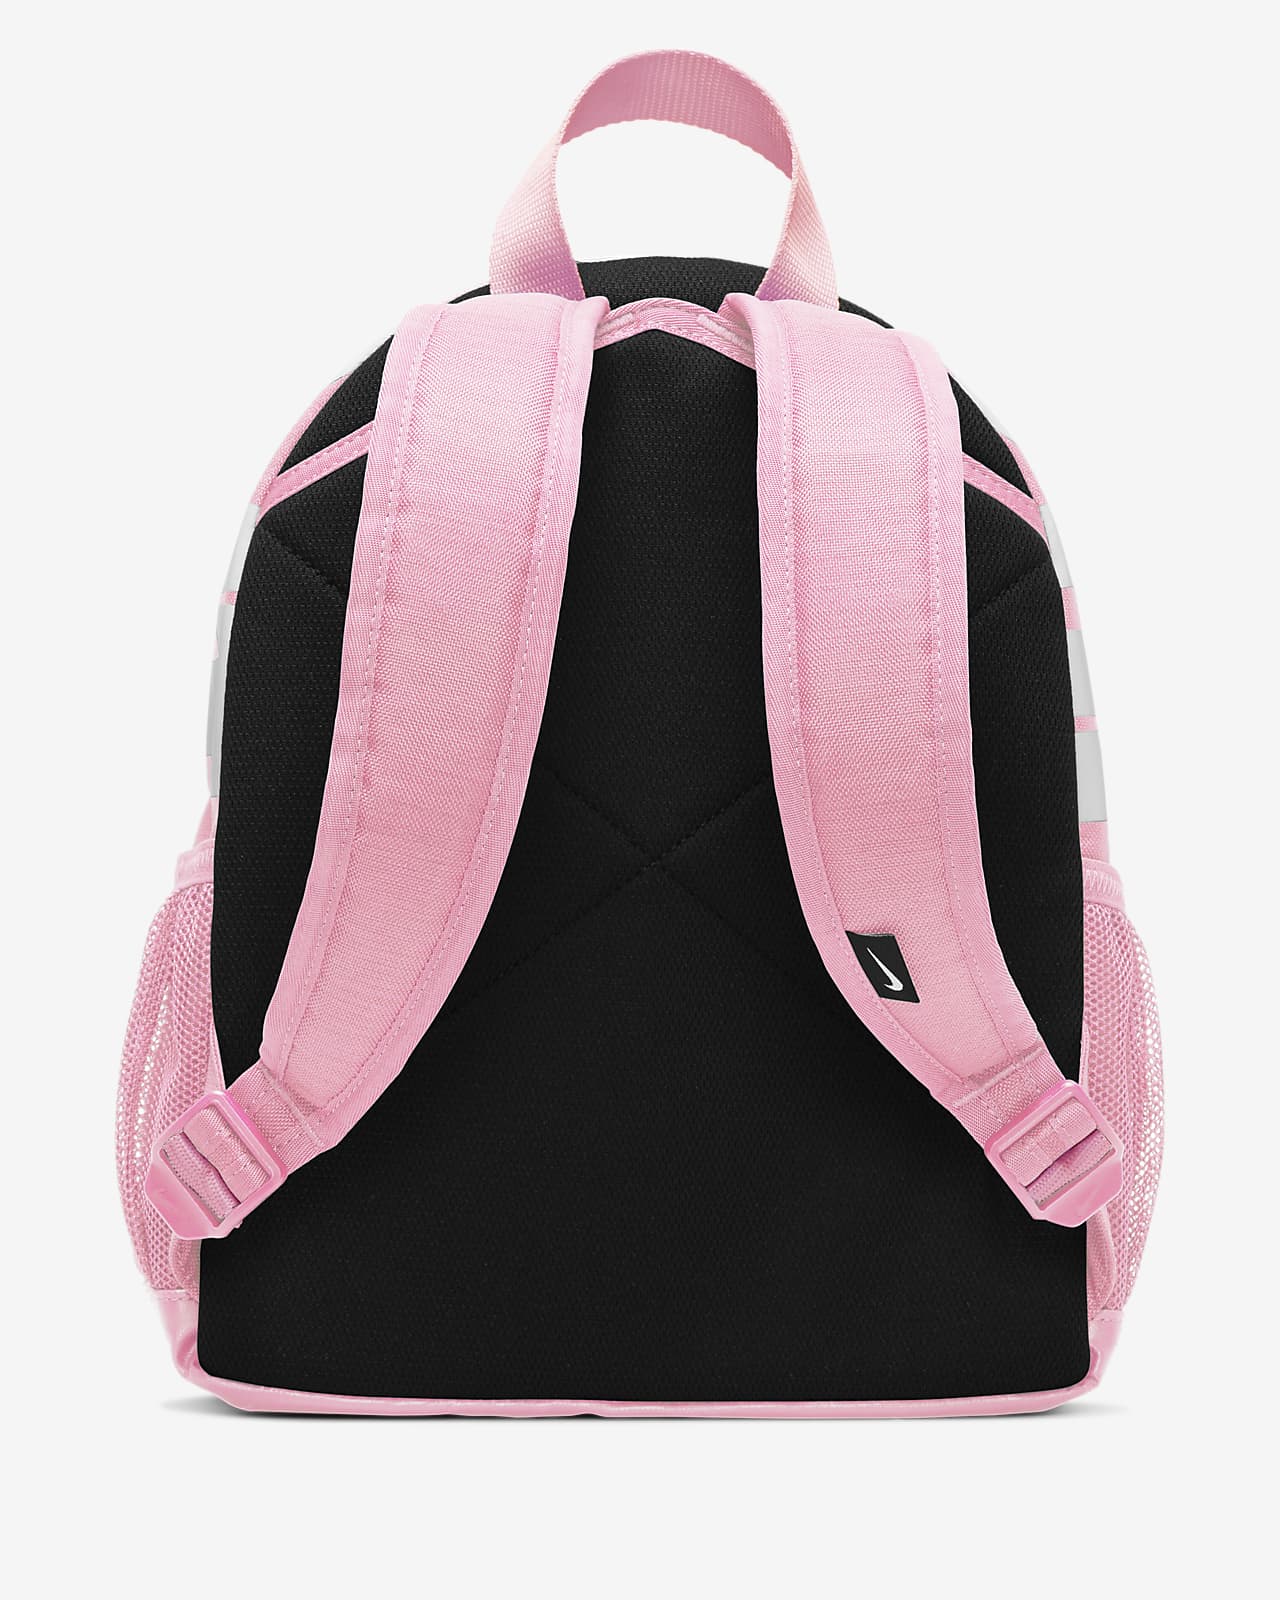 nike mini backpack indonesia